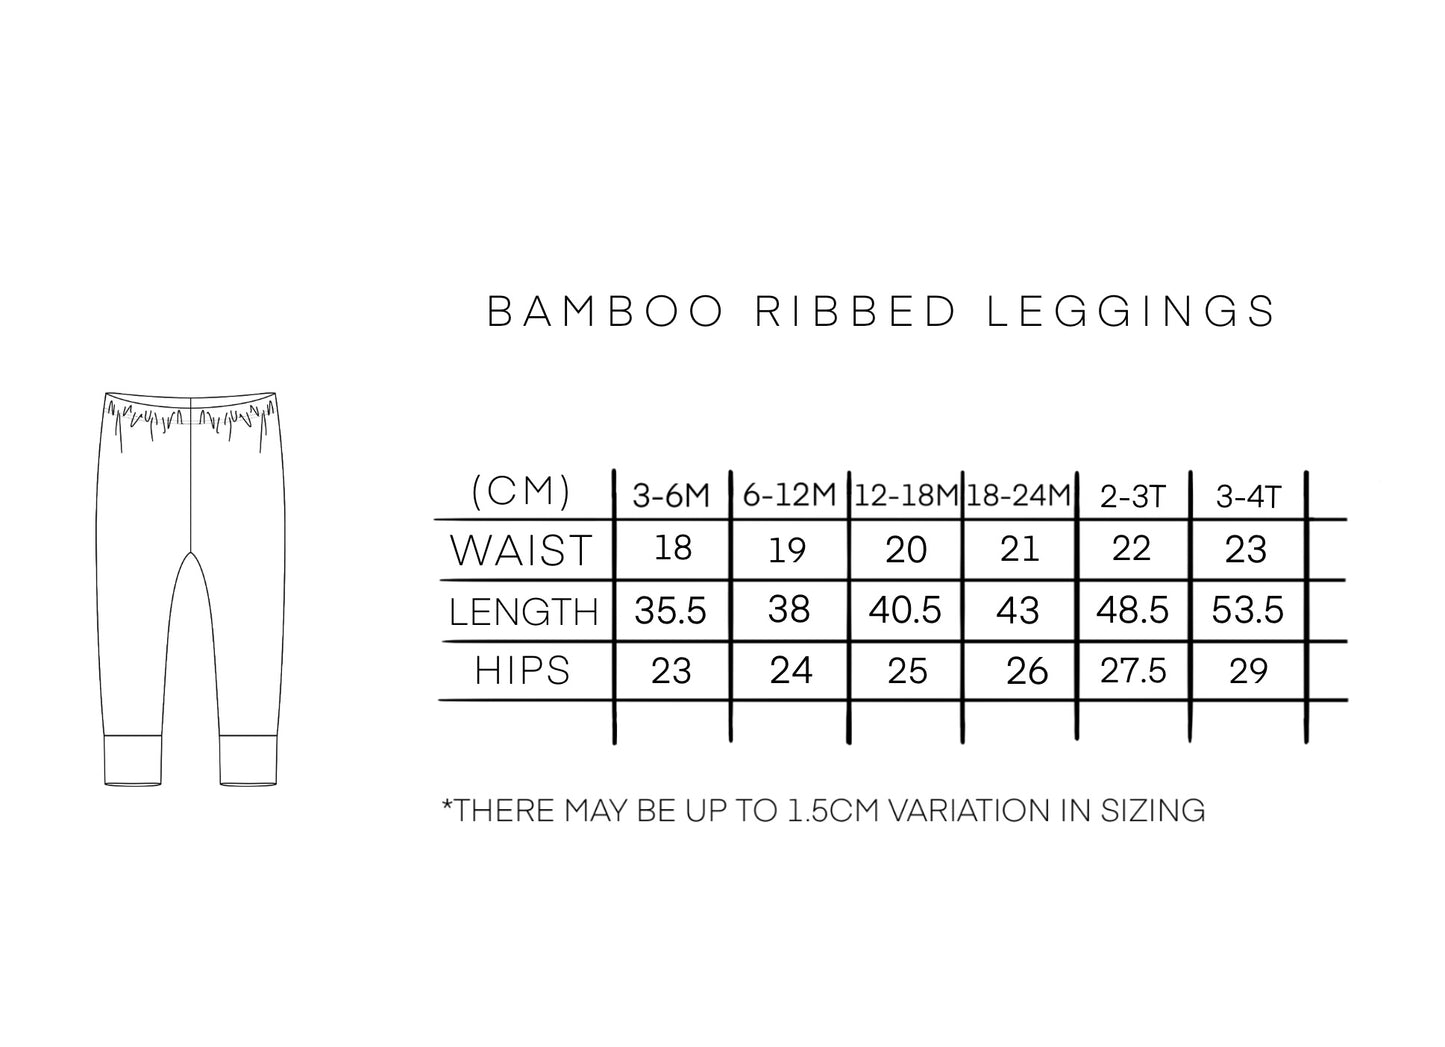 BAMBOO RIBBED LEGGINGS - AUBURN